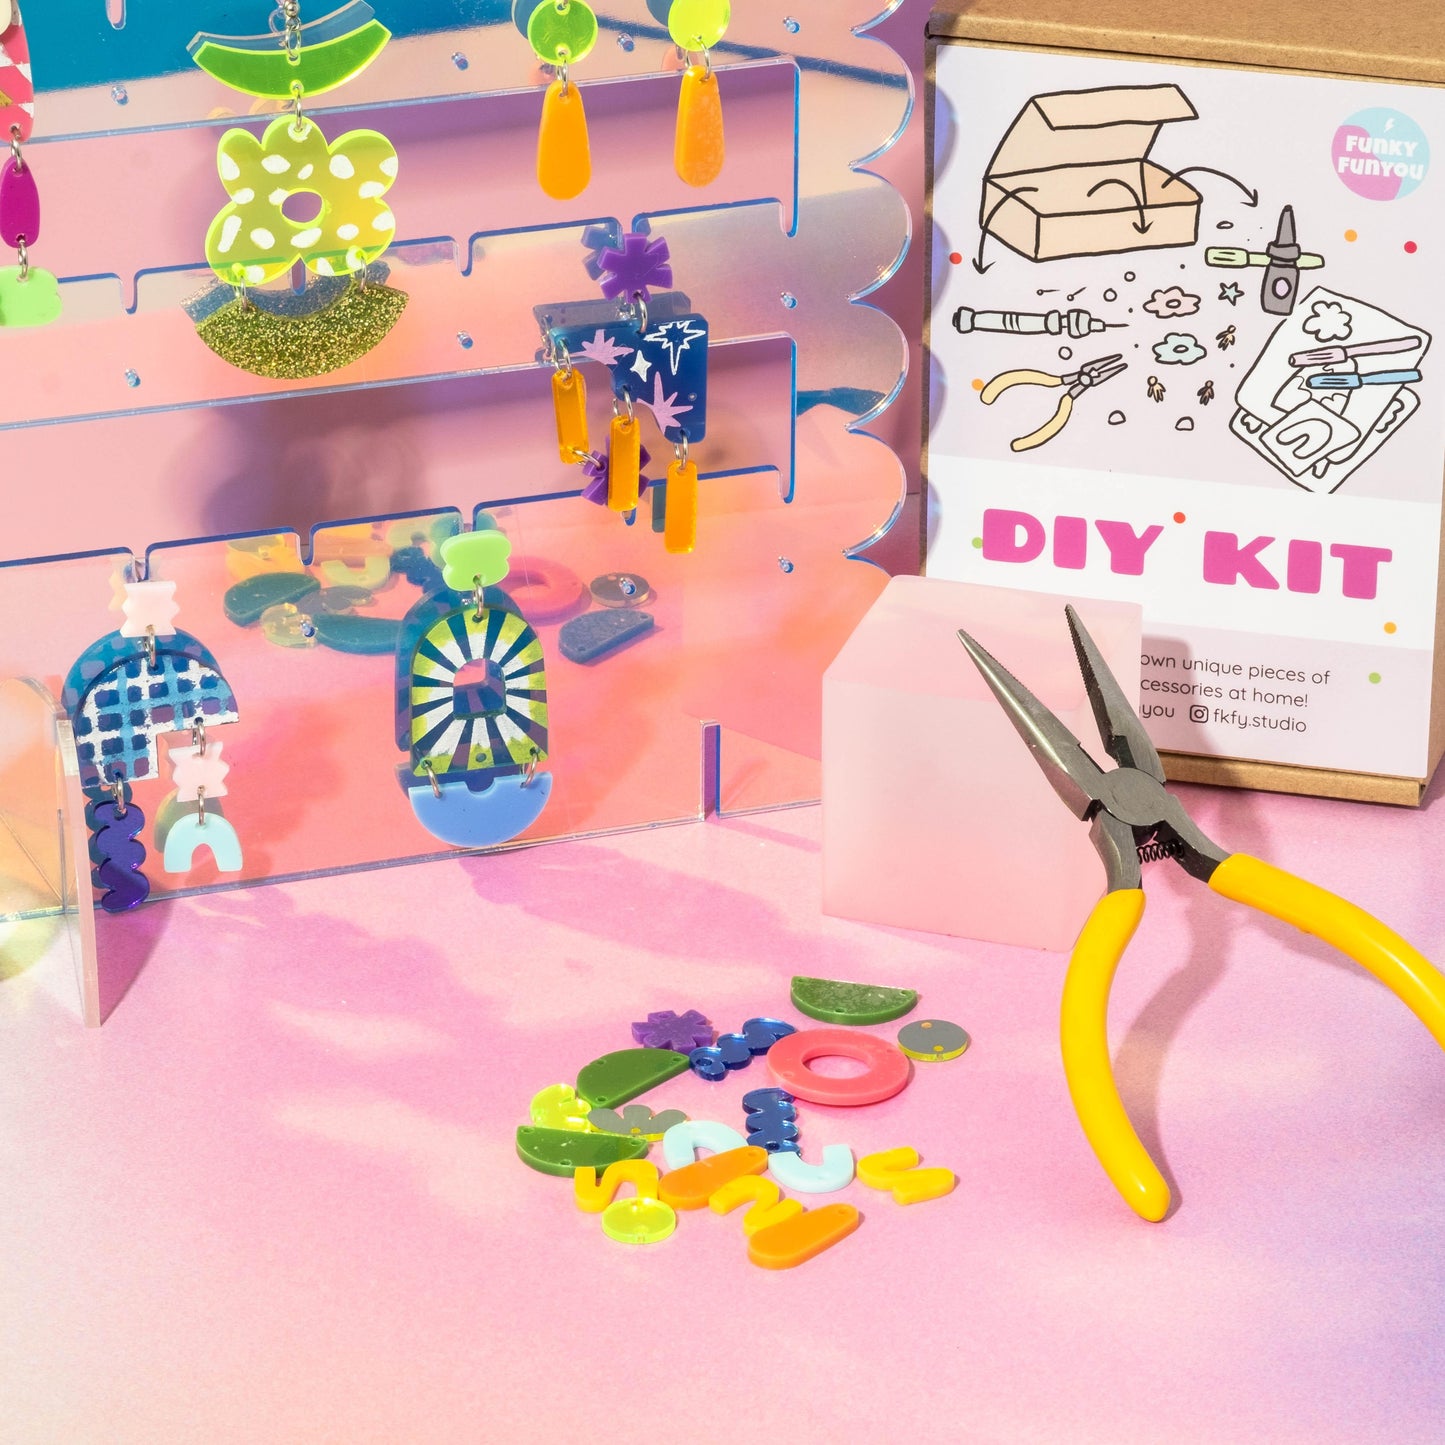 HOME WORKSHOP EARRING KIT LOOK 1 - FunkyFunYou-Creative Statement Earrings & DIY Kit